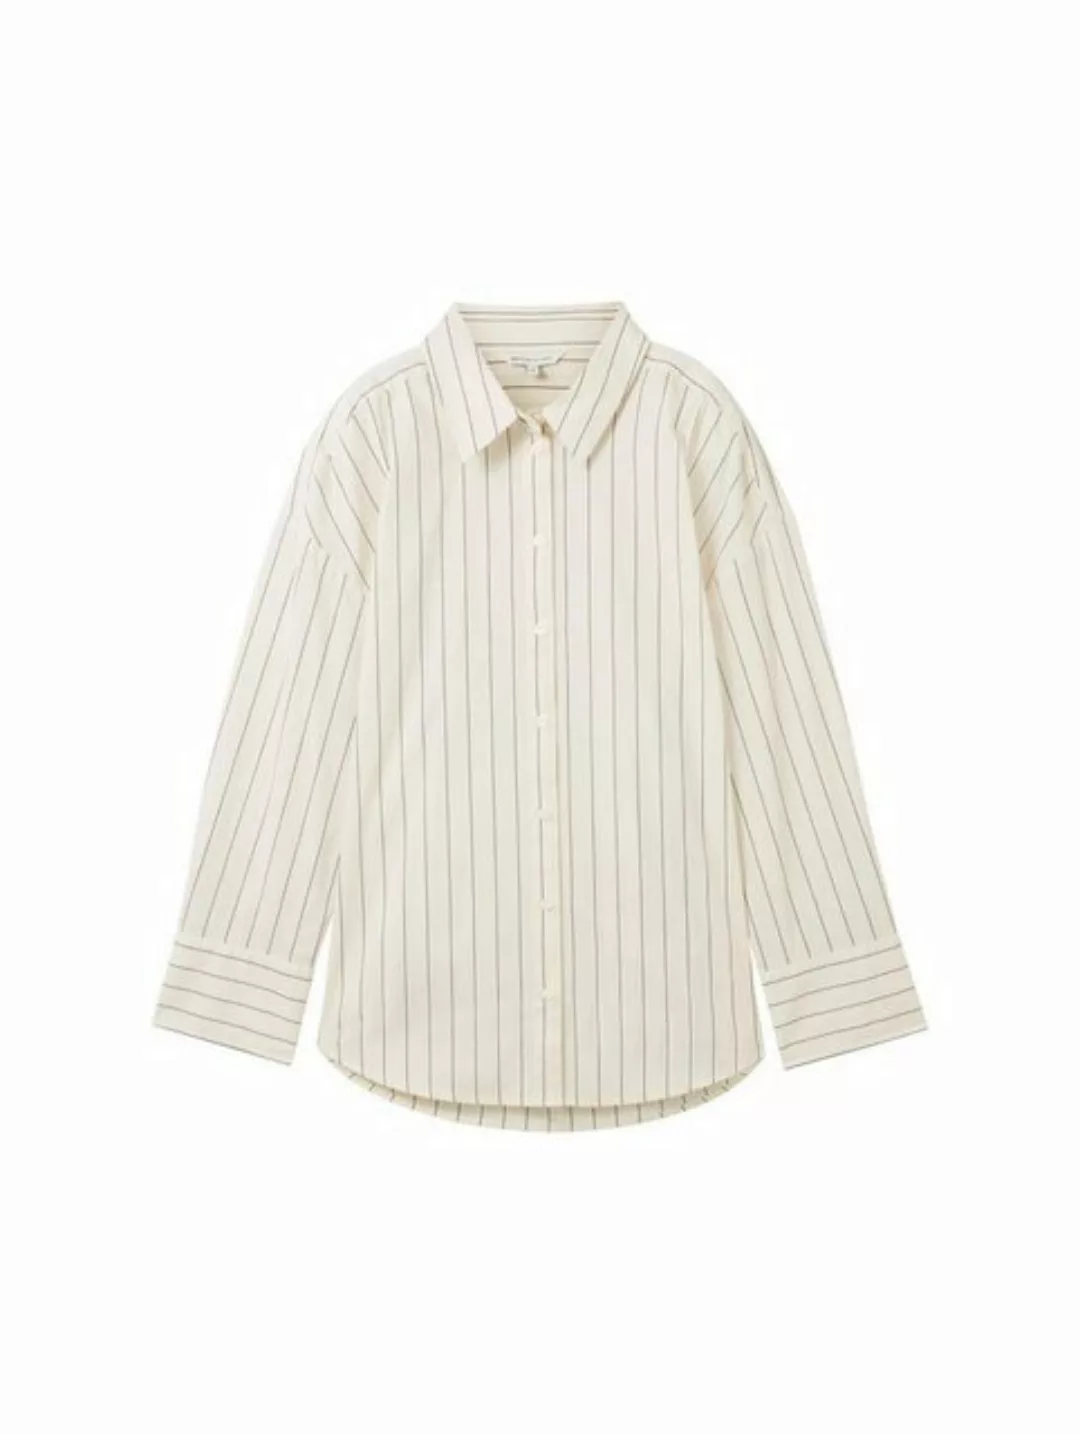 TOM TAILOR Denim Blusenshirt striped poplin shirt, beige navy pinstripe günstig online kaufen